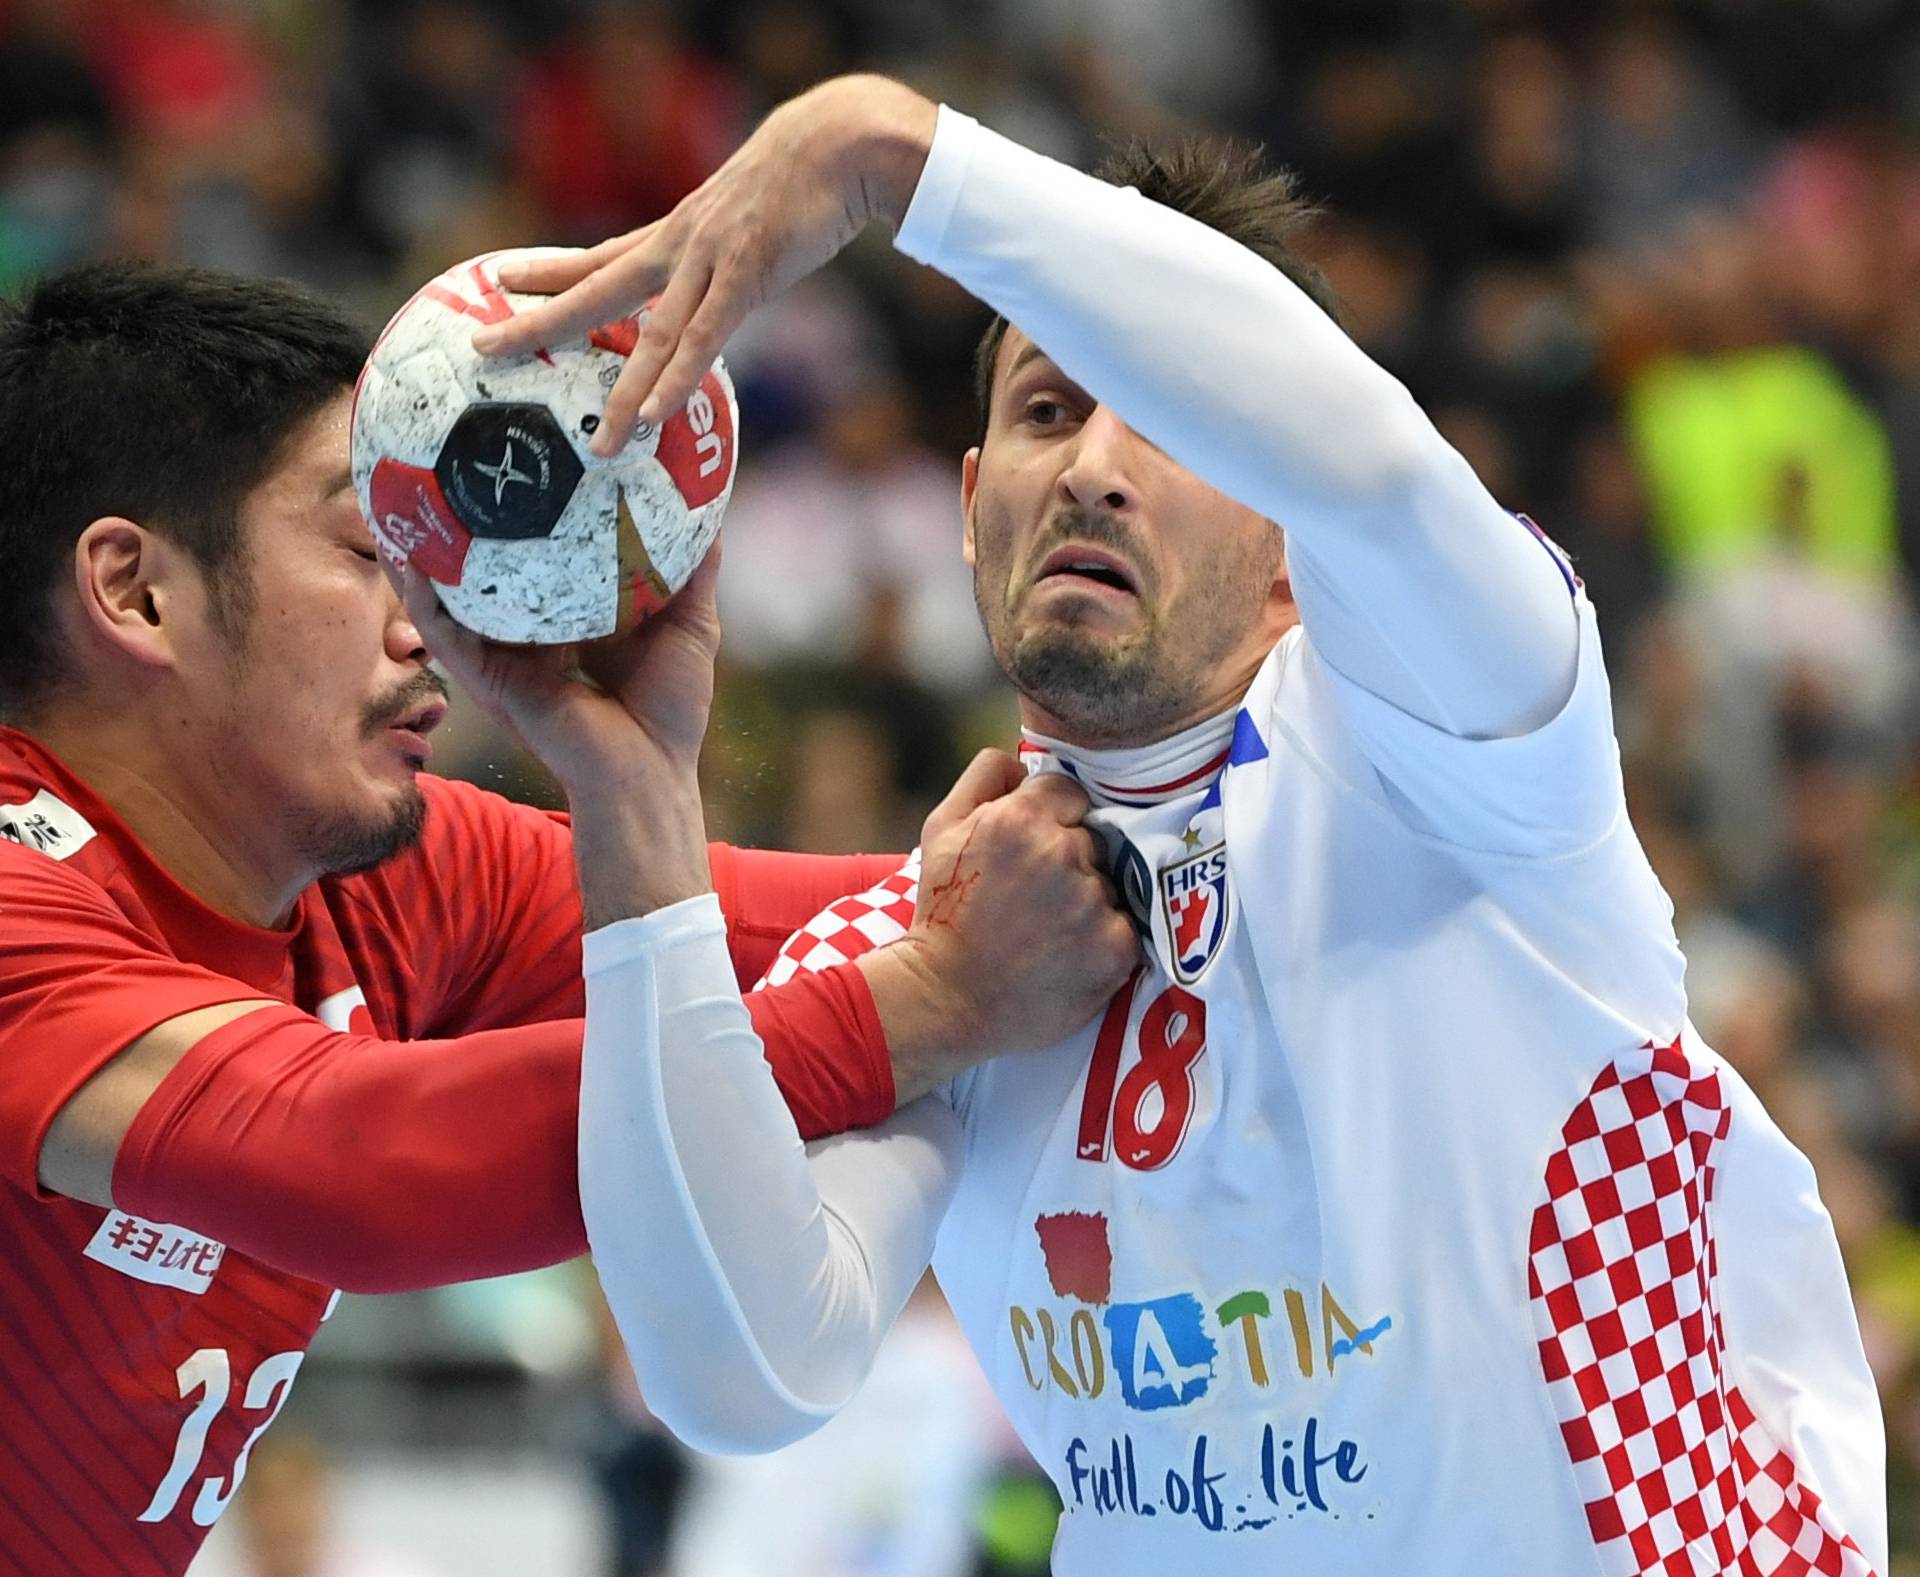 IHF Handball World Championship - Germany & Denmark 2019 - Group B - Croatia v Japan